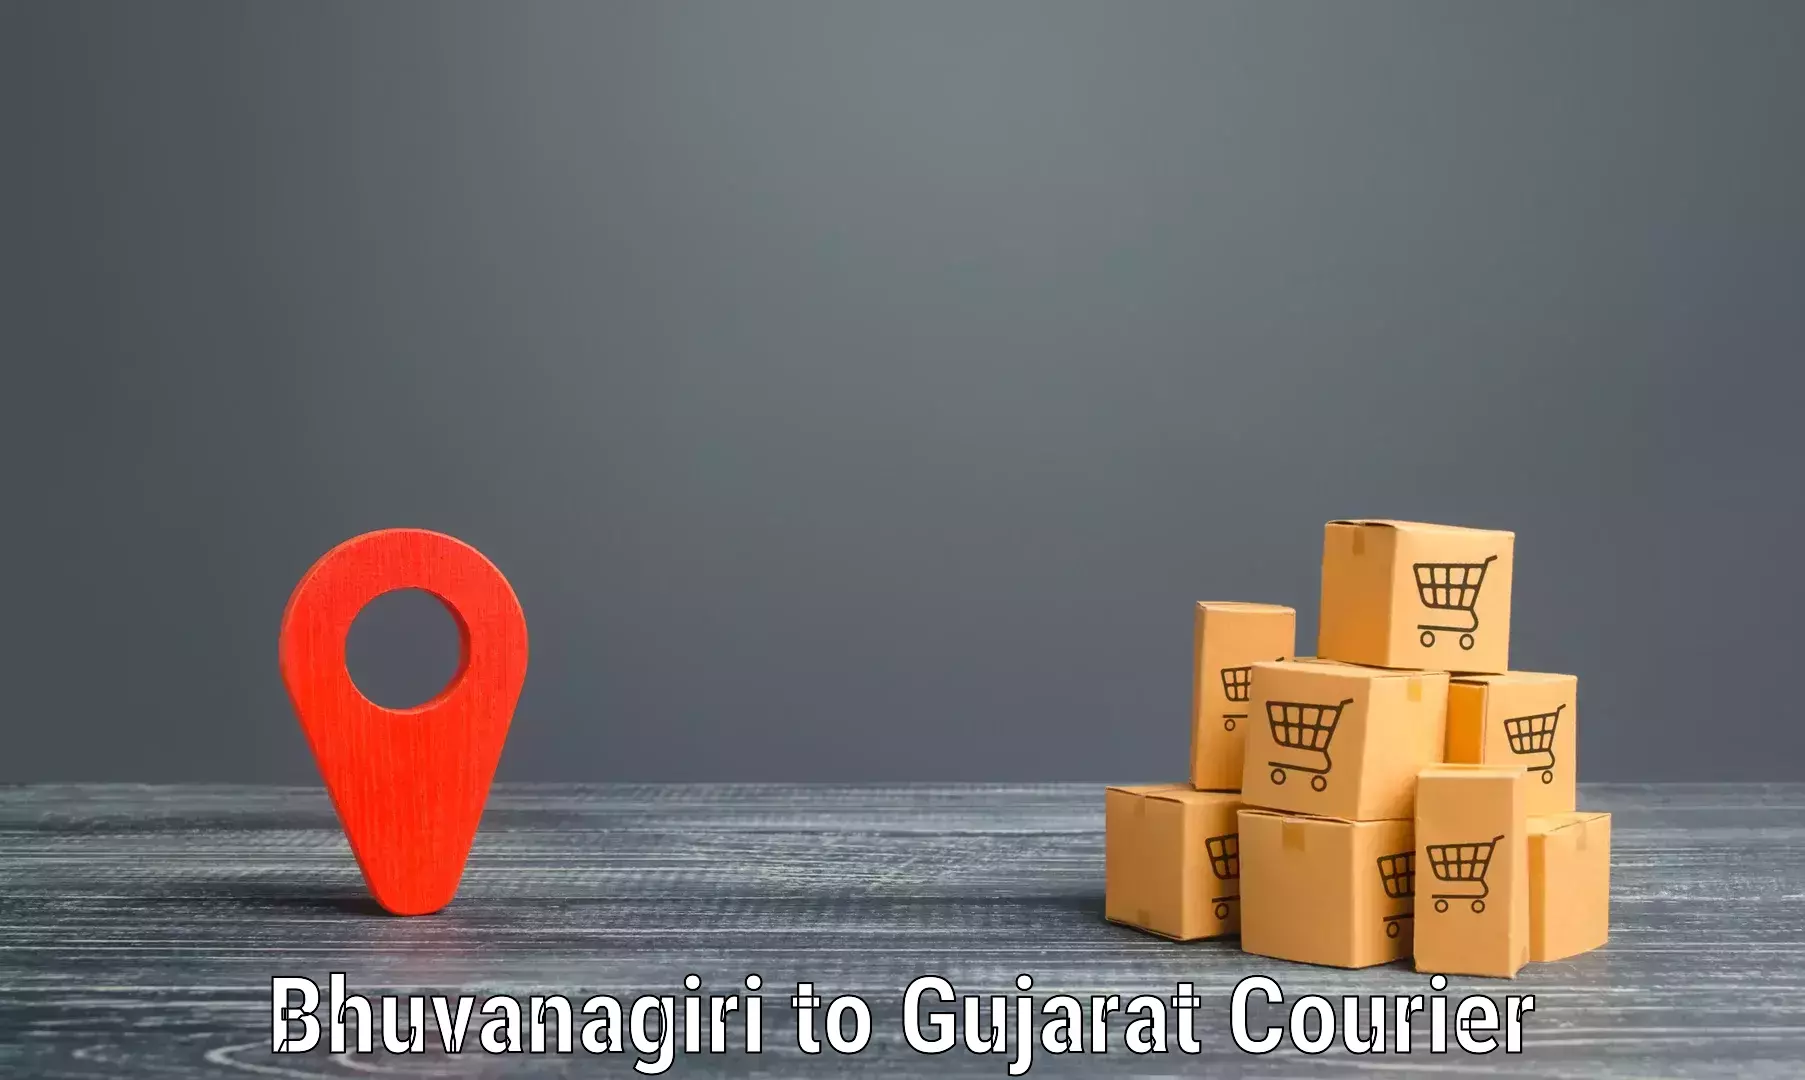 Next day courier Bhuvanagiri to IIIT Surat